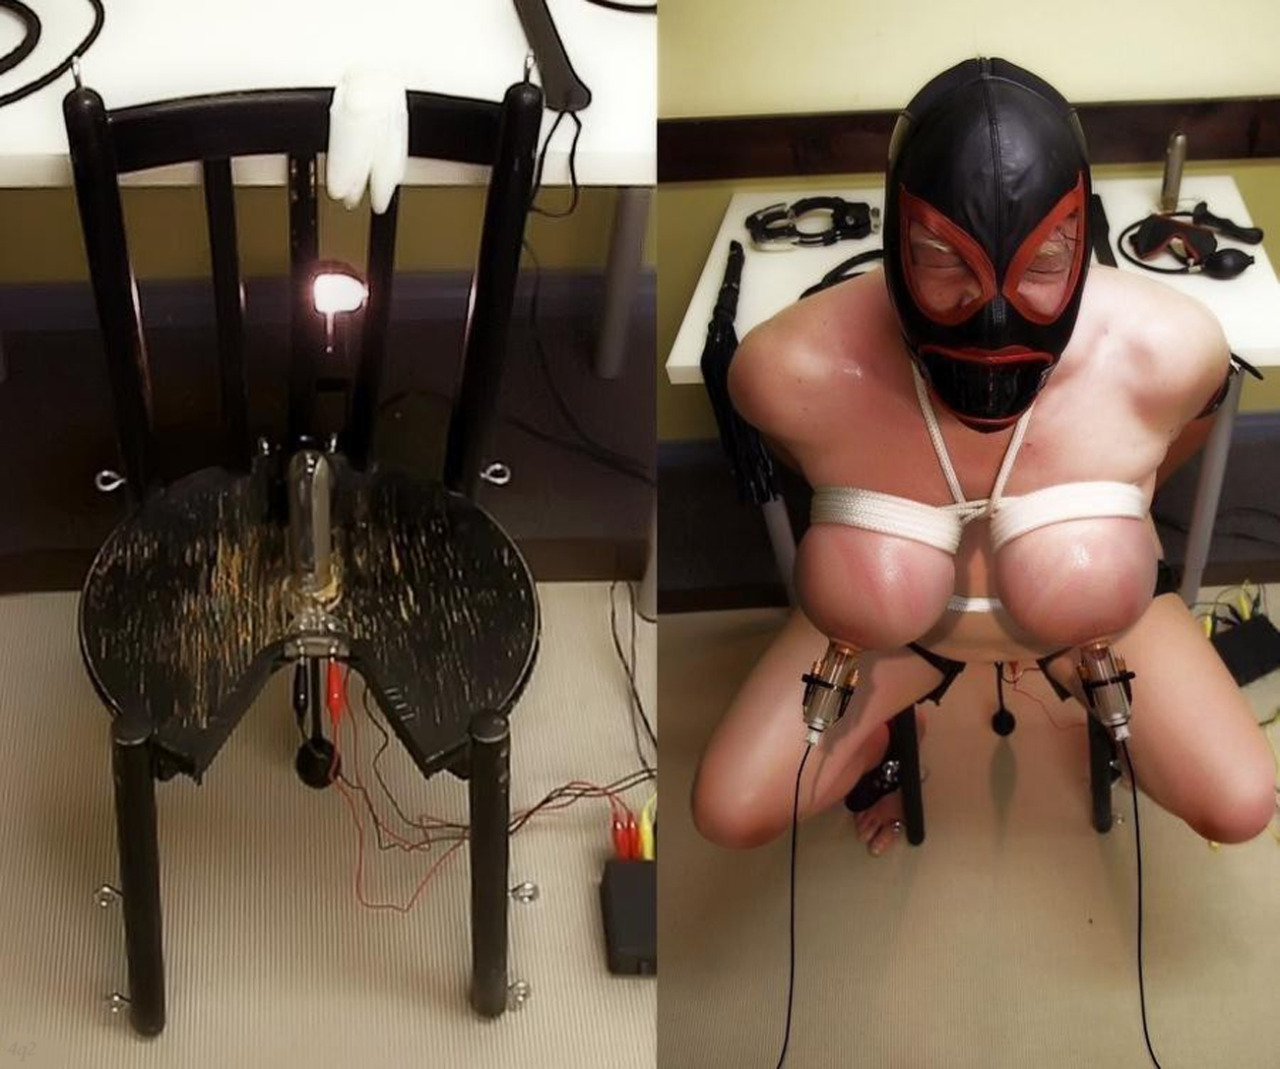 Electro bondage play